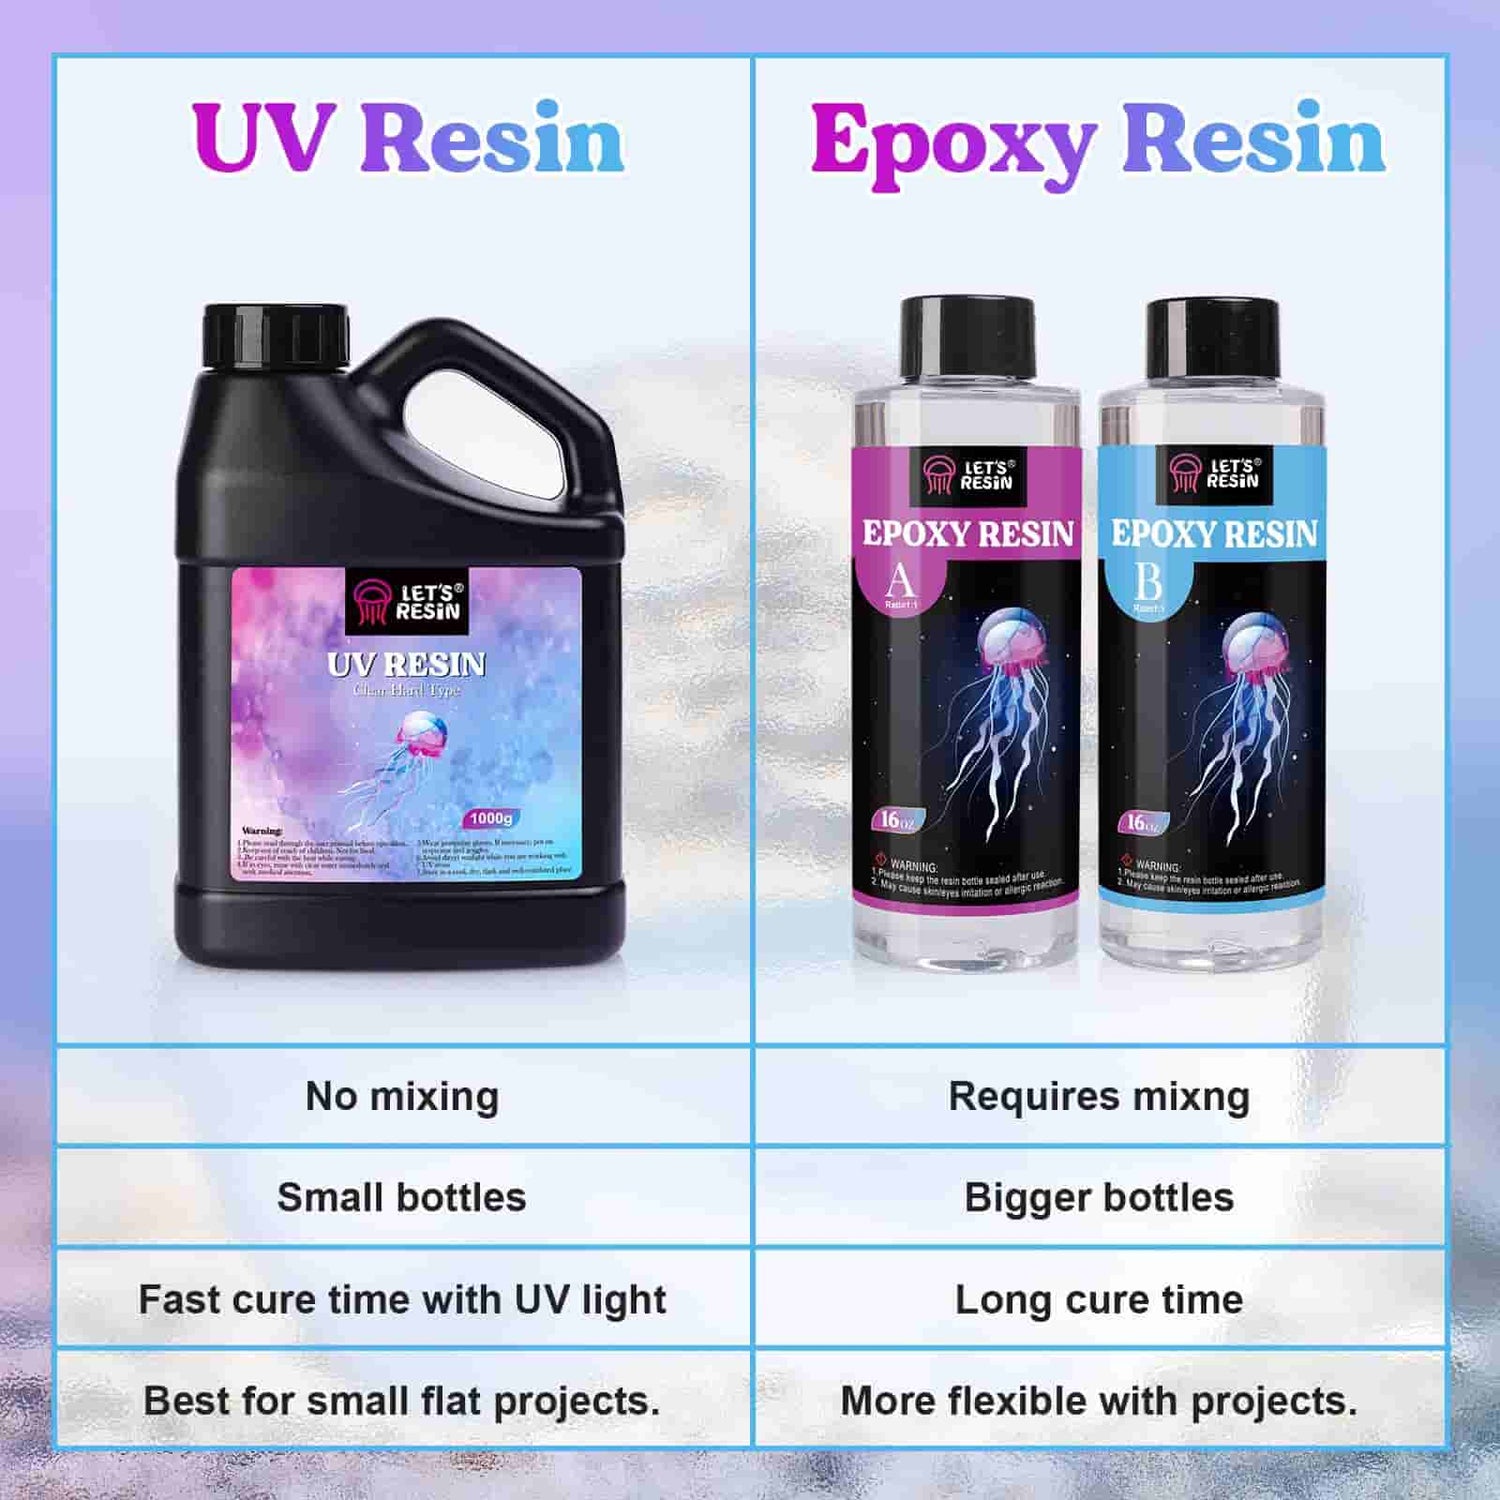 Let's Resin Uv Resin Kit Epoxy Resin Kit Epoxy Uv Resin Kit With